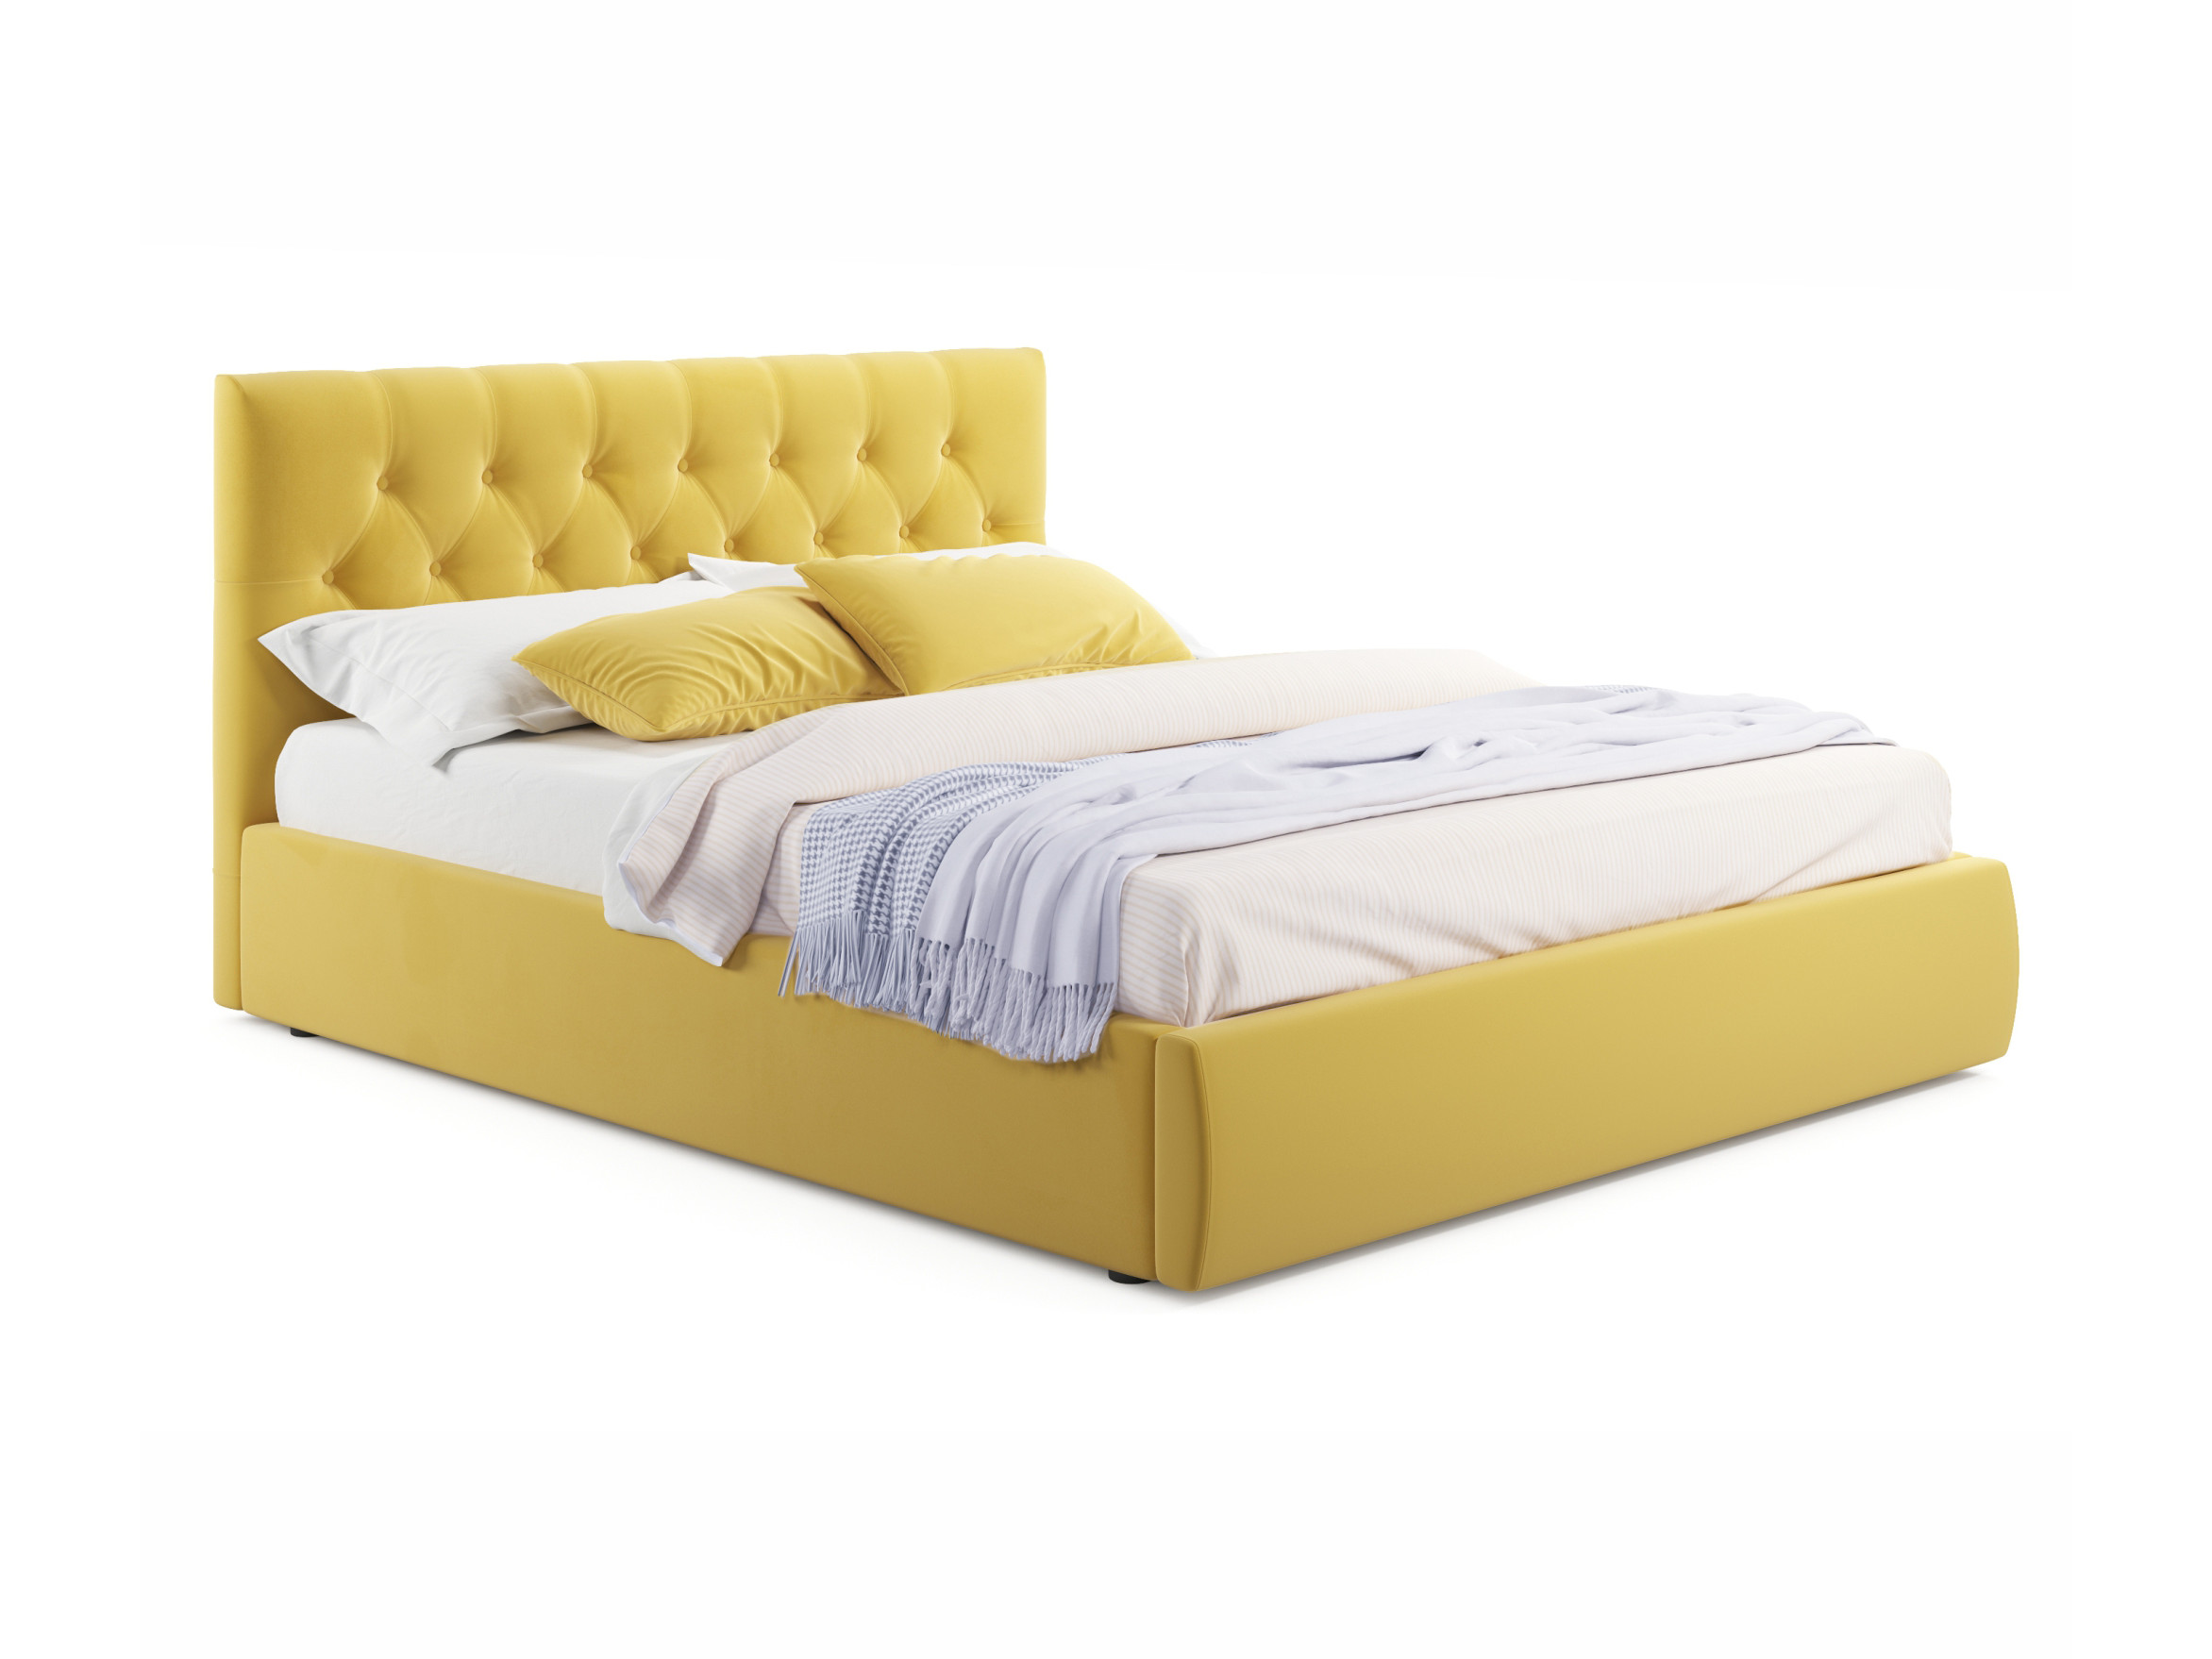 Мягкая кровать Verona 1600 желтая с ортопедическим основанием желтый, Желтый, Велюр, ДСП мягкая кровать verona 1600 желтая с ортопедическим основанием желтый желтый велюр дсп